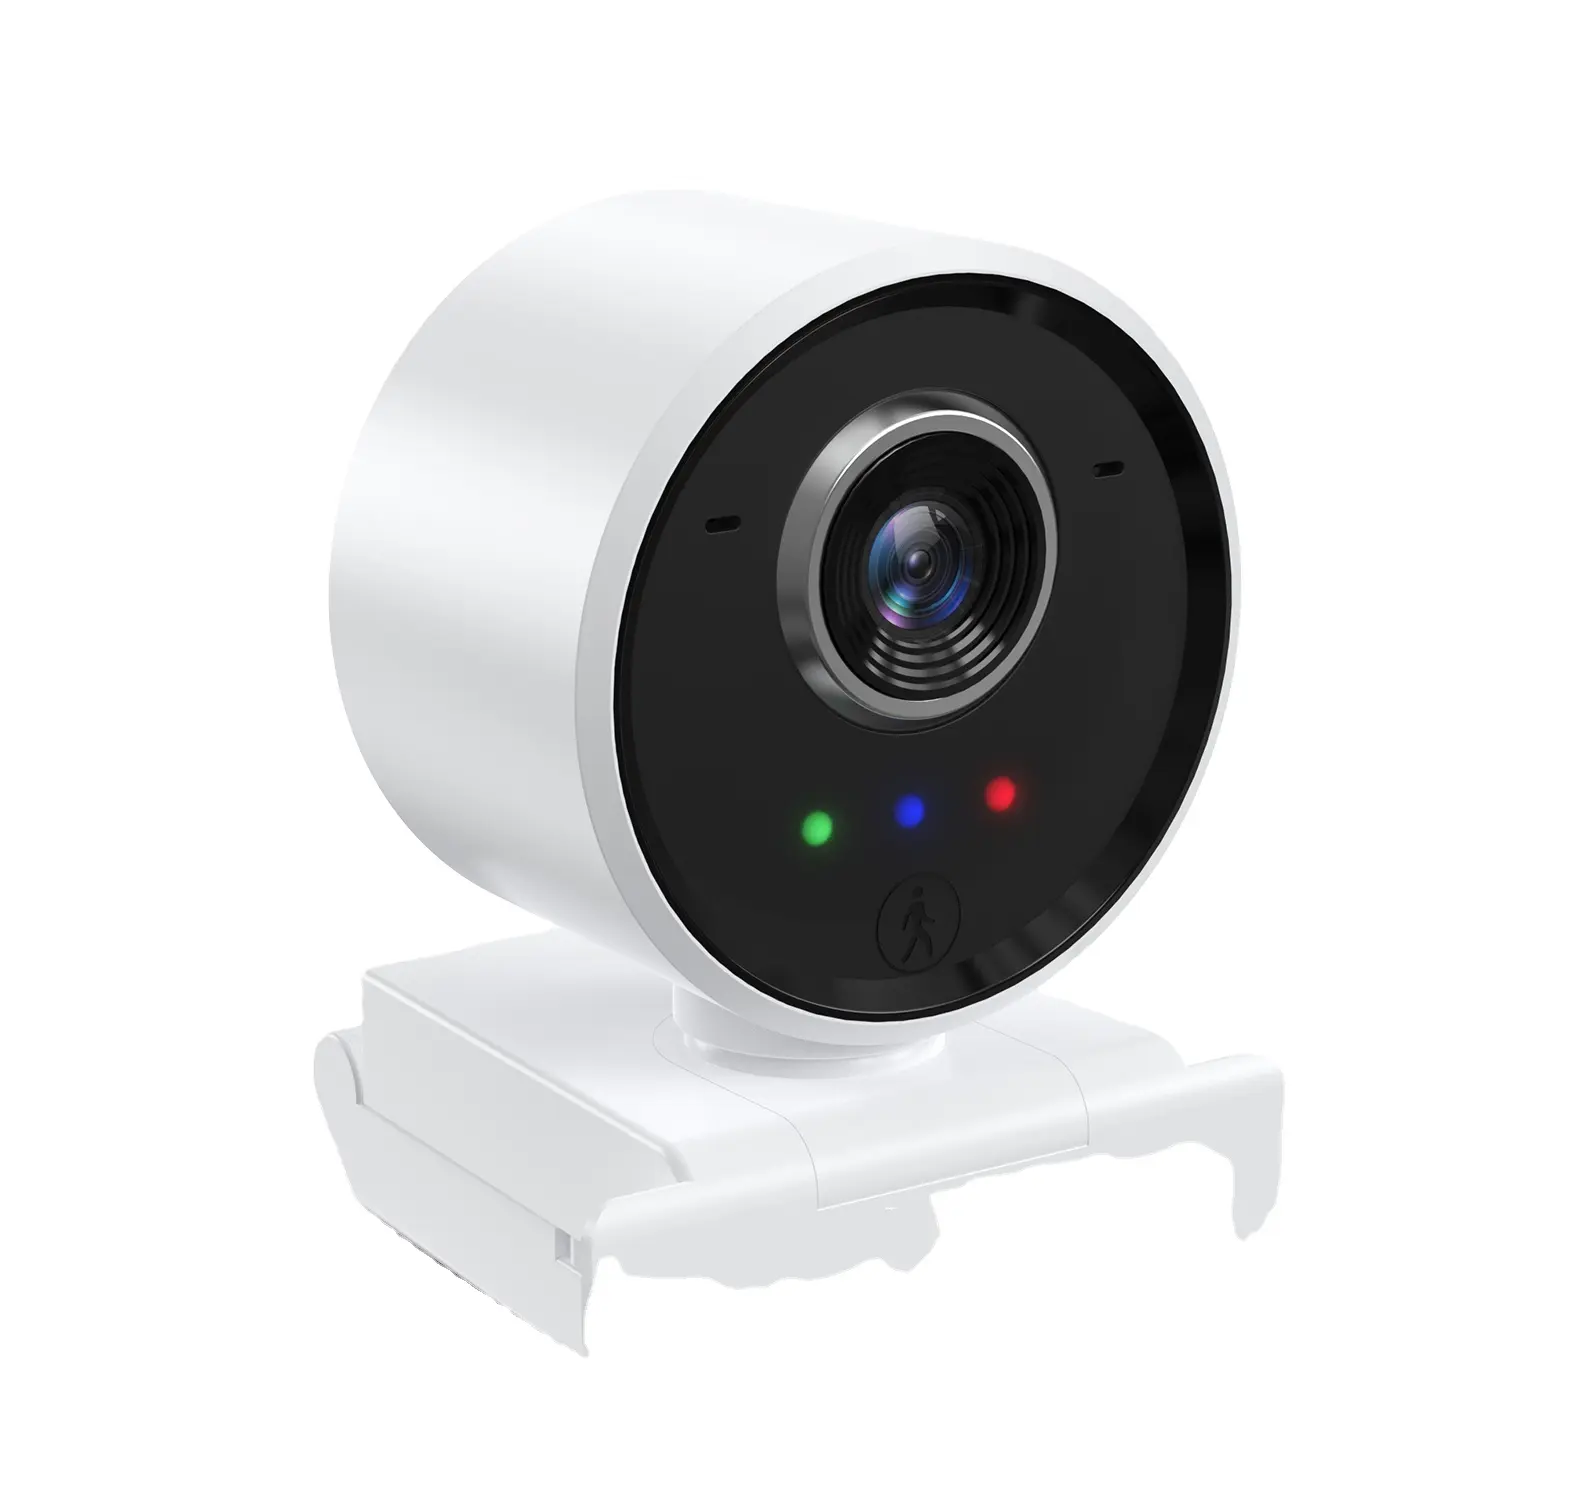 Innotronik 웹캠 1080 시리즈 인간 추적 자동 초점 웹 카메라 지원 다양한 비디오 회의 소프트웨어 원격 제어